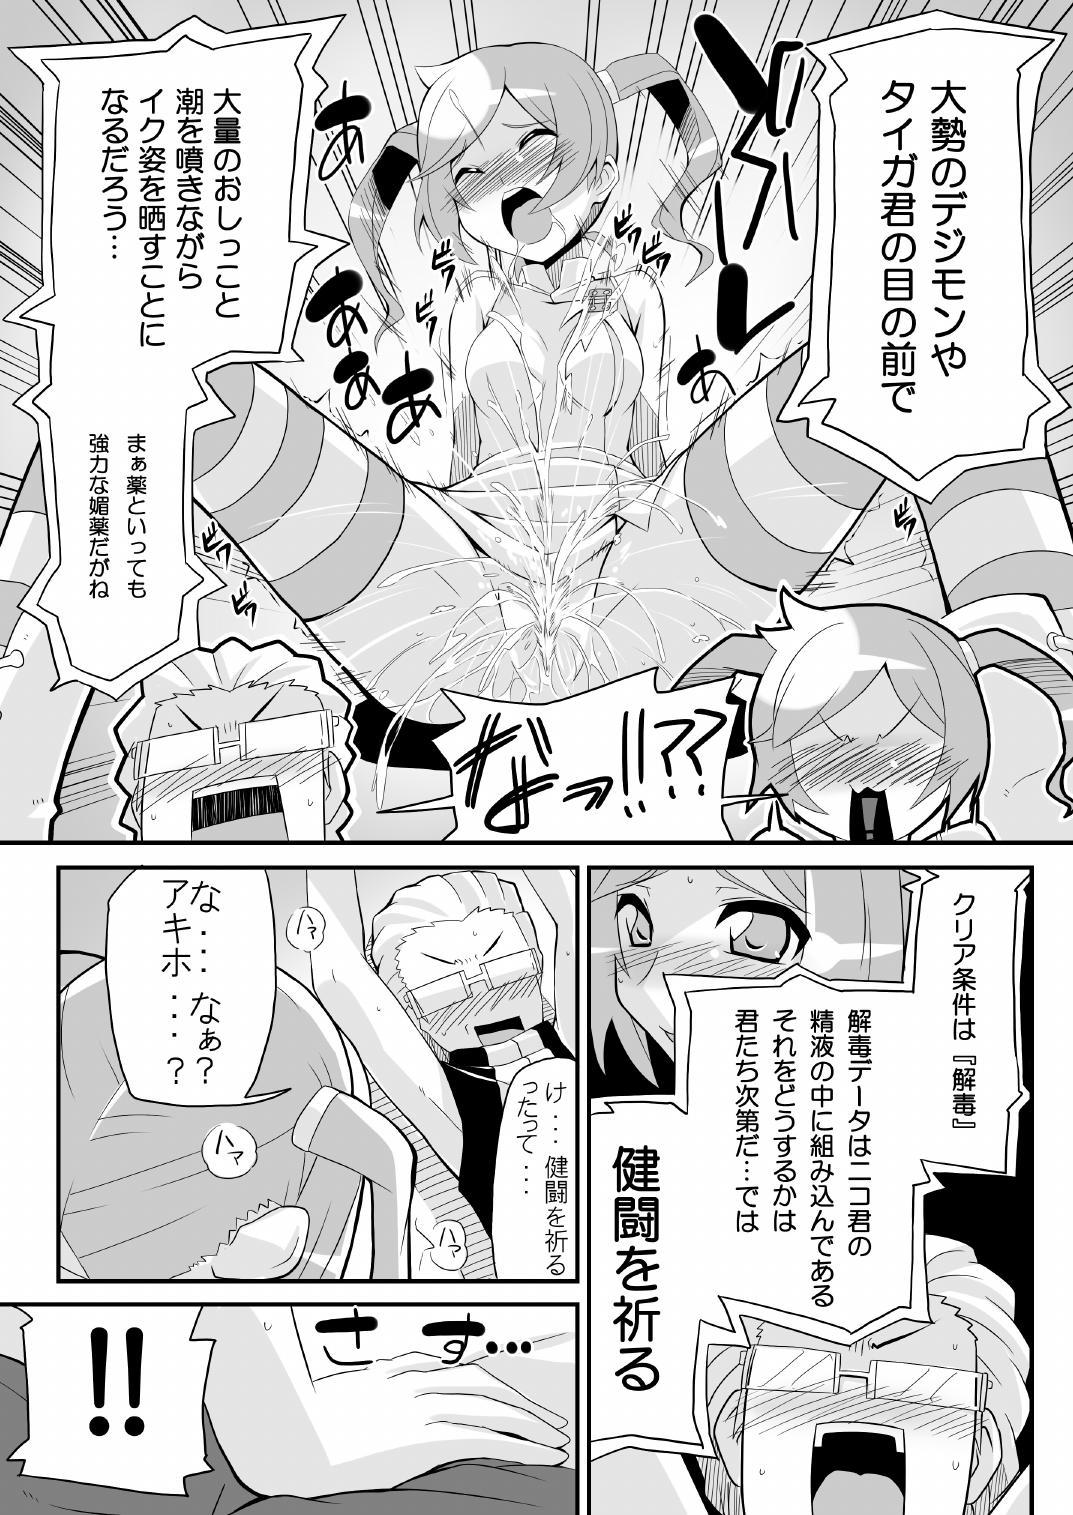 Tittyfuck Re:Akiho/Rinatize Ero - Digimon Youth Porn - Page 5